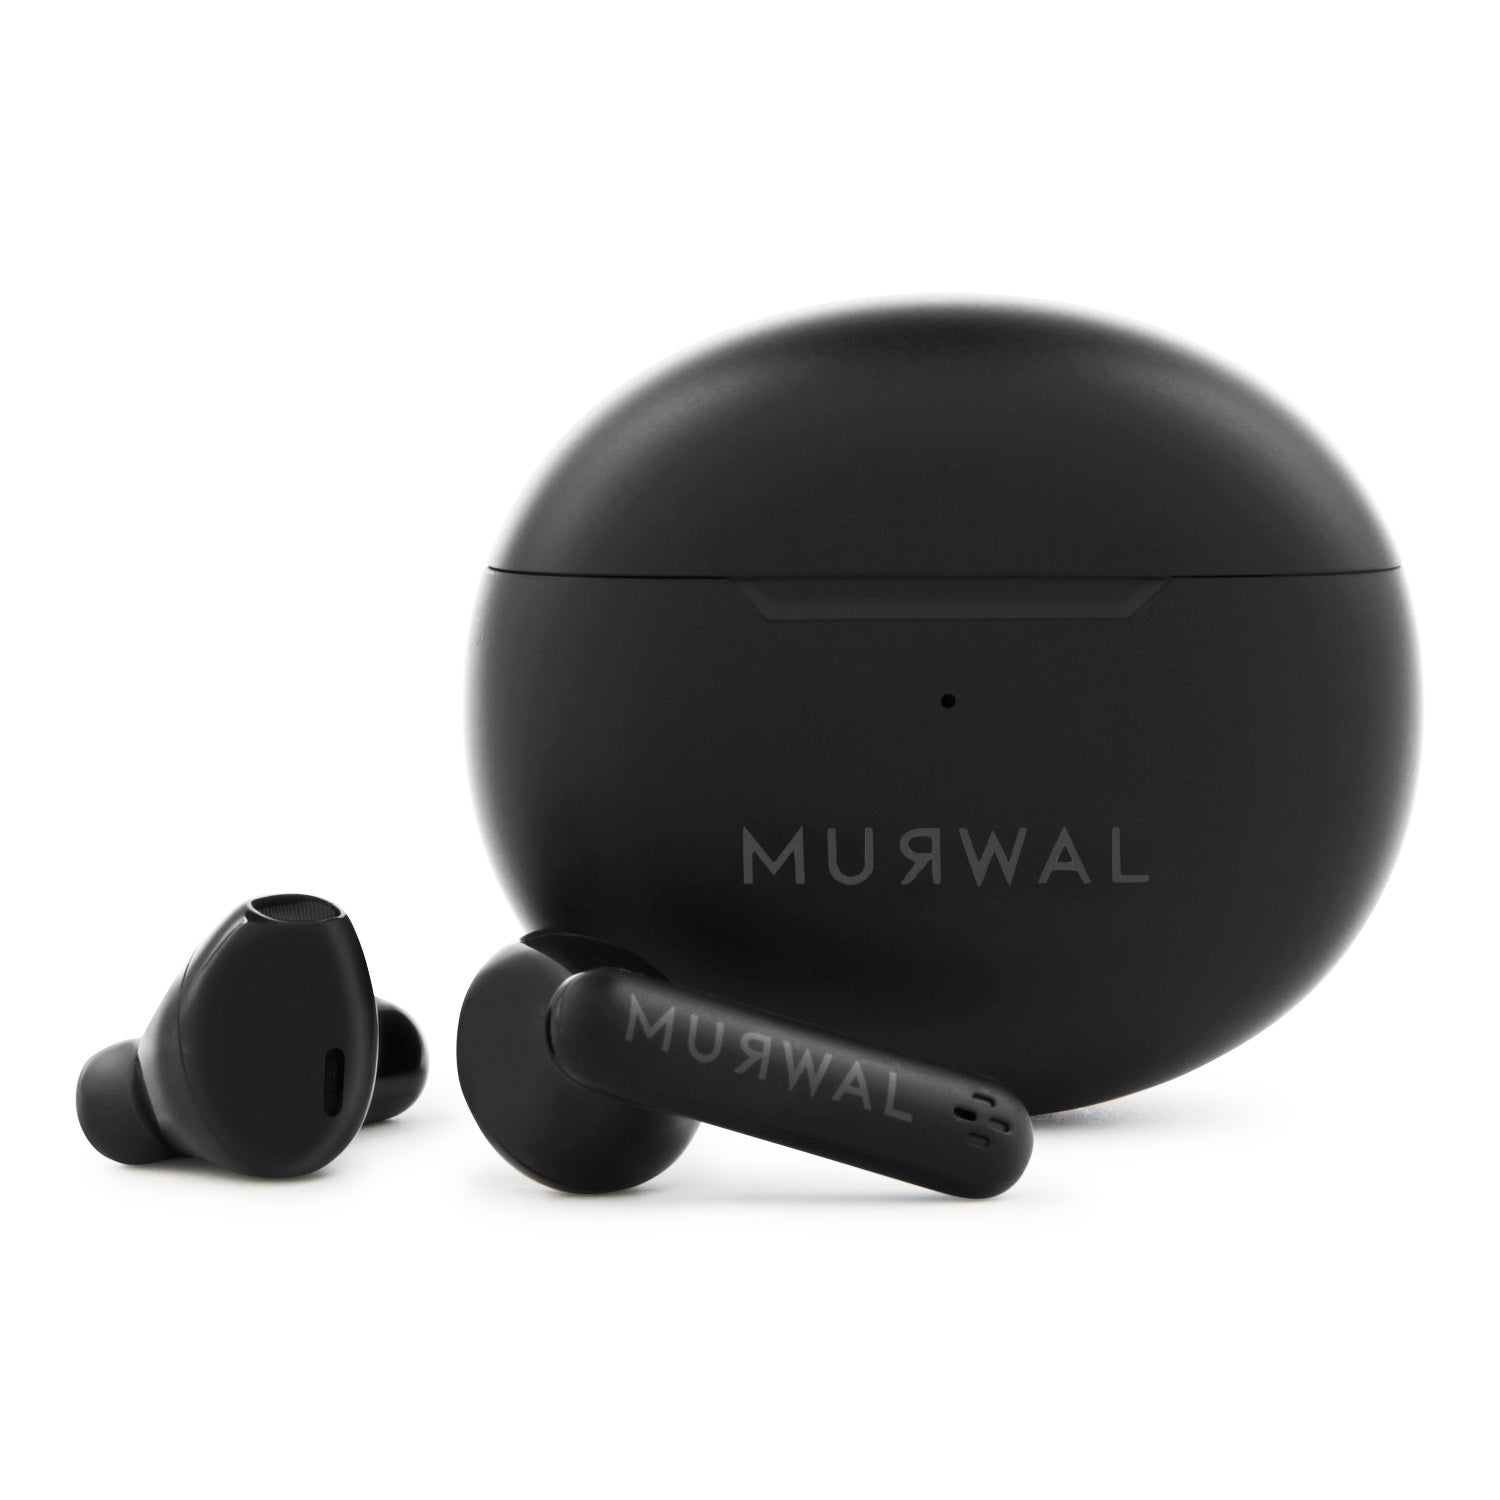 AURICULARES Bluetooth inalámbricos MURWAL GLOBE BLACK EDITION con microfono  20 Horas de reproducción, IPX5 Impermeable, reducción de Ruido para  Trabajar o Viajar ideales para el día a día Ajuste perfecto en oreja